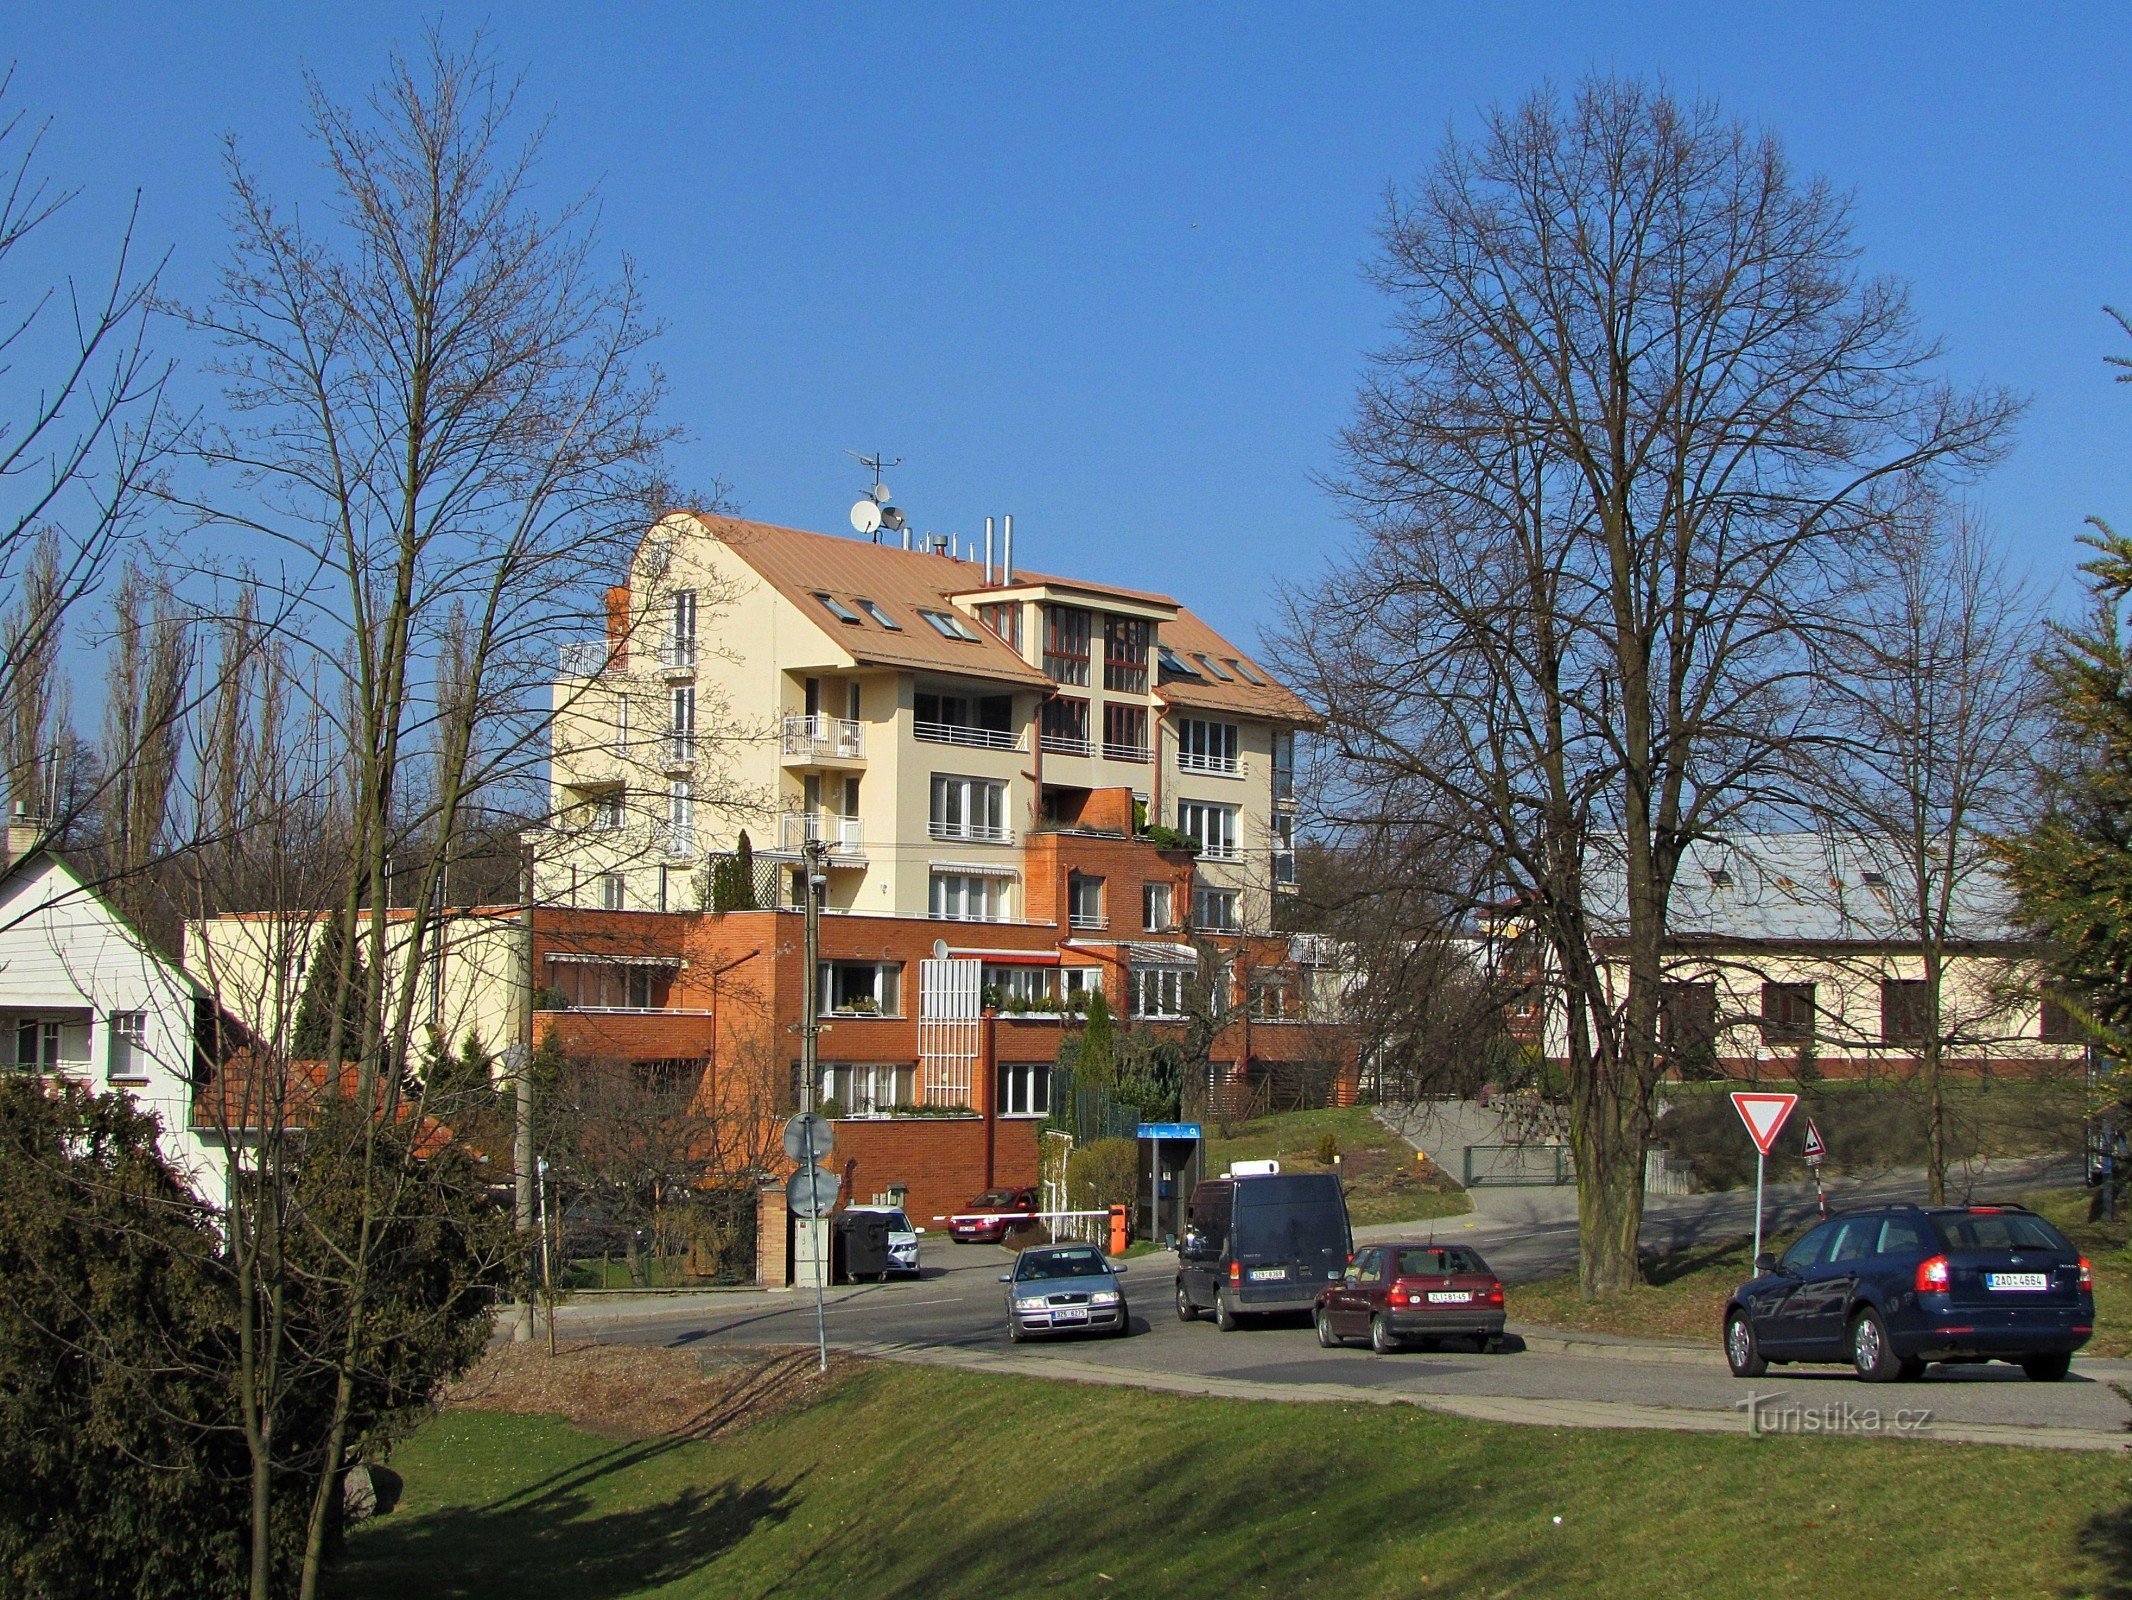 Zlín - Hradská straat